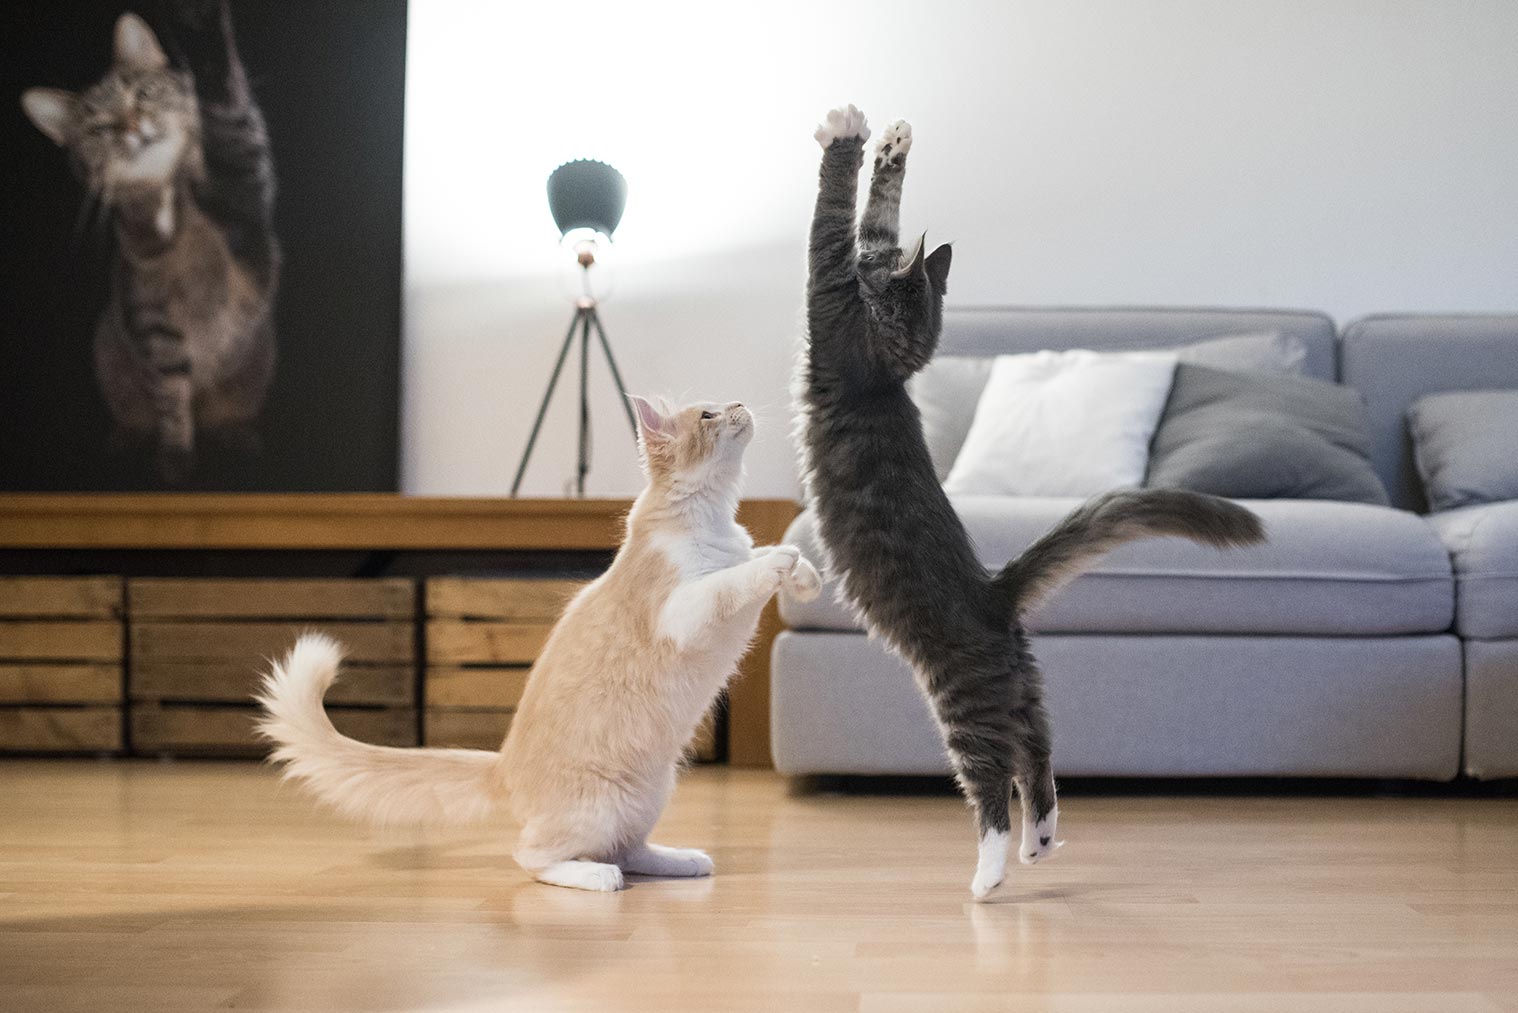 Zwei spielende Katzen springen hoch.